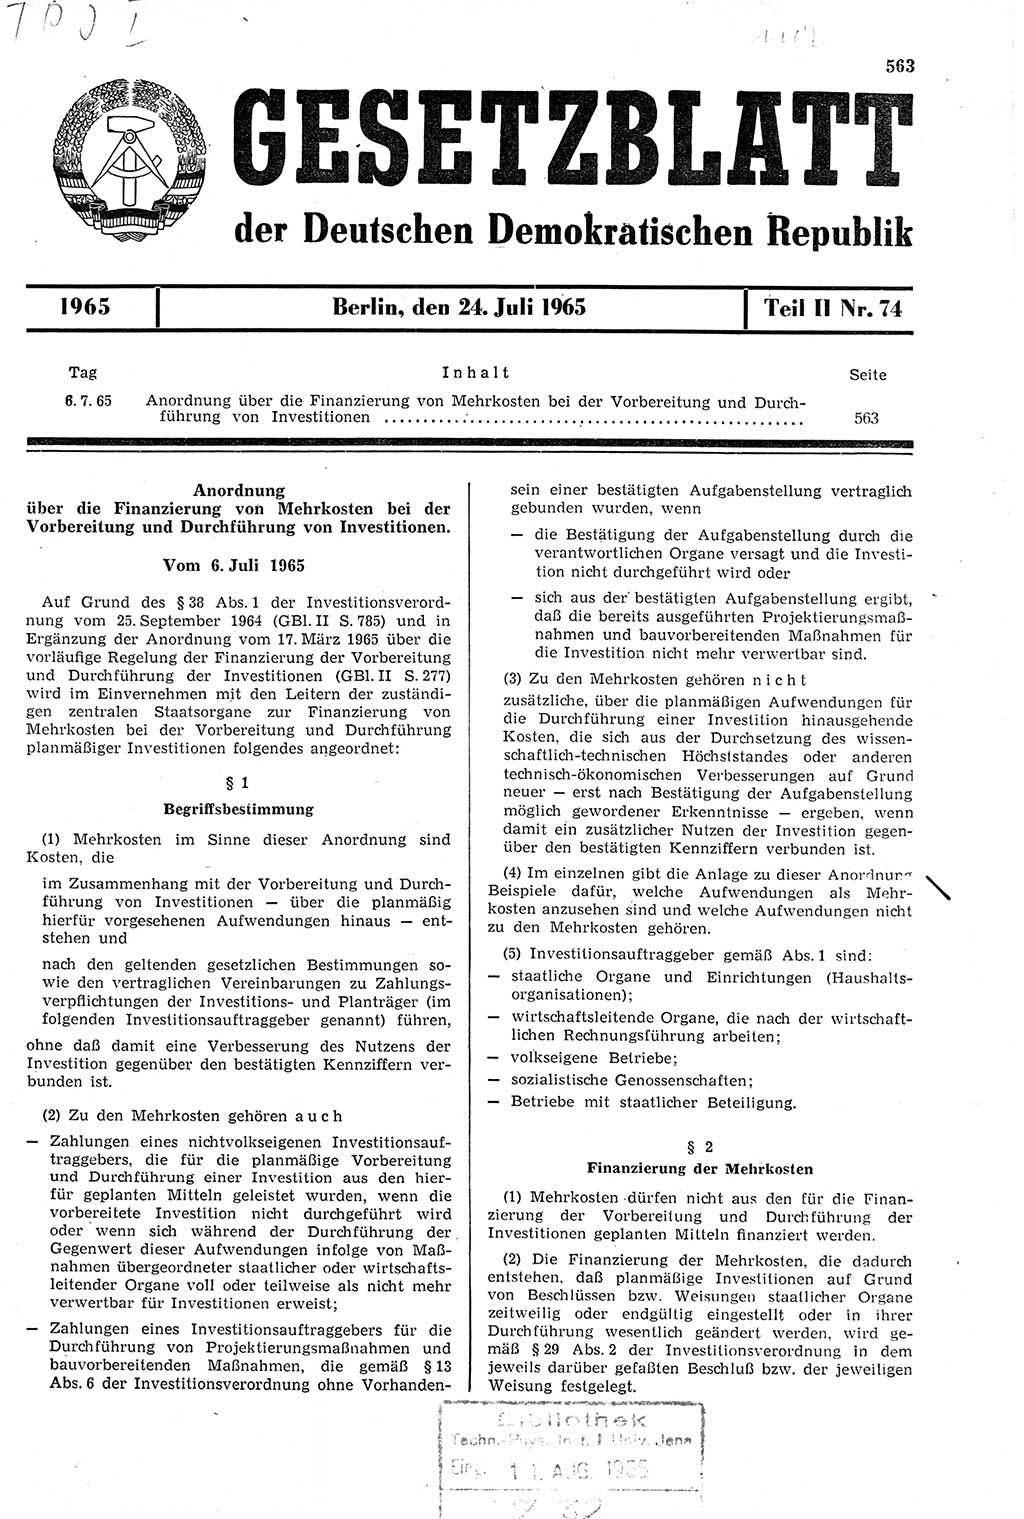 Gesetzblatt (GBl.) der Deutschen Demokratischen Republik (DDR) Teil ⅠⅠ 1965, Seite 563 (GBl. DDR ⅠⅠ 1965, S. 563)